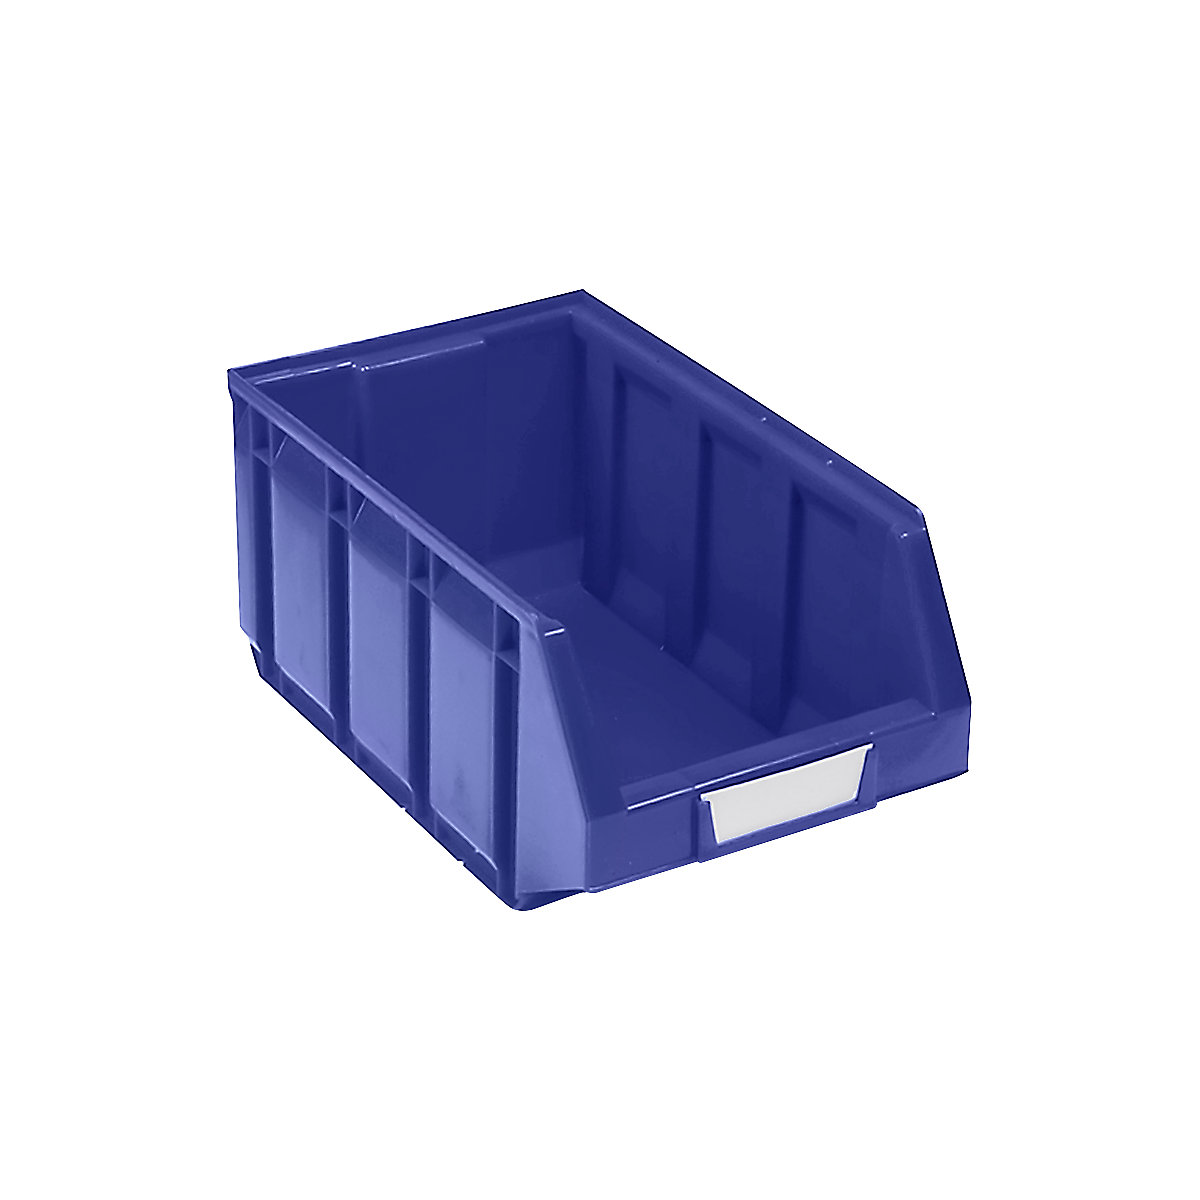 Otwarty pojemnik magazynowy z polietylenu, dł. x szer. x wys. 345 x 205 x 164 mm, niebieski, opak. 24 szt.-9